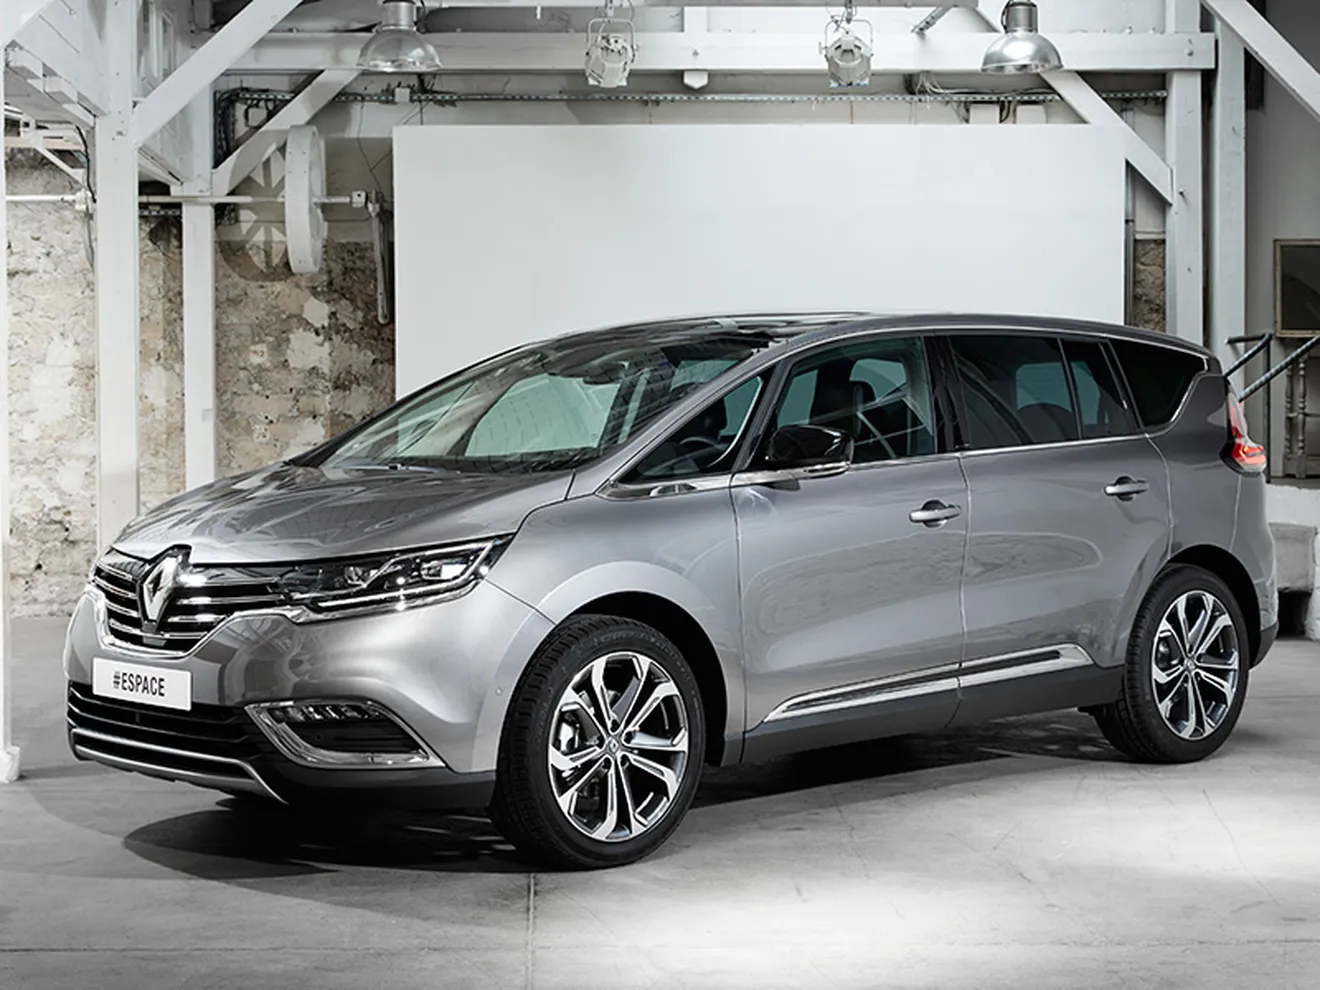 Renault Espace 2015, llega a España con un precio de salida de 30.950 euros